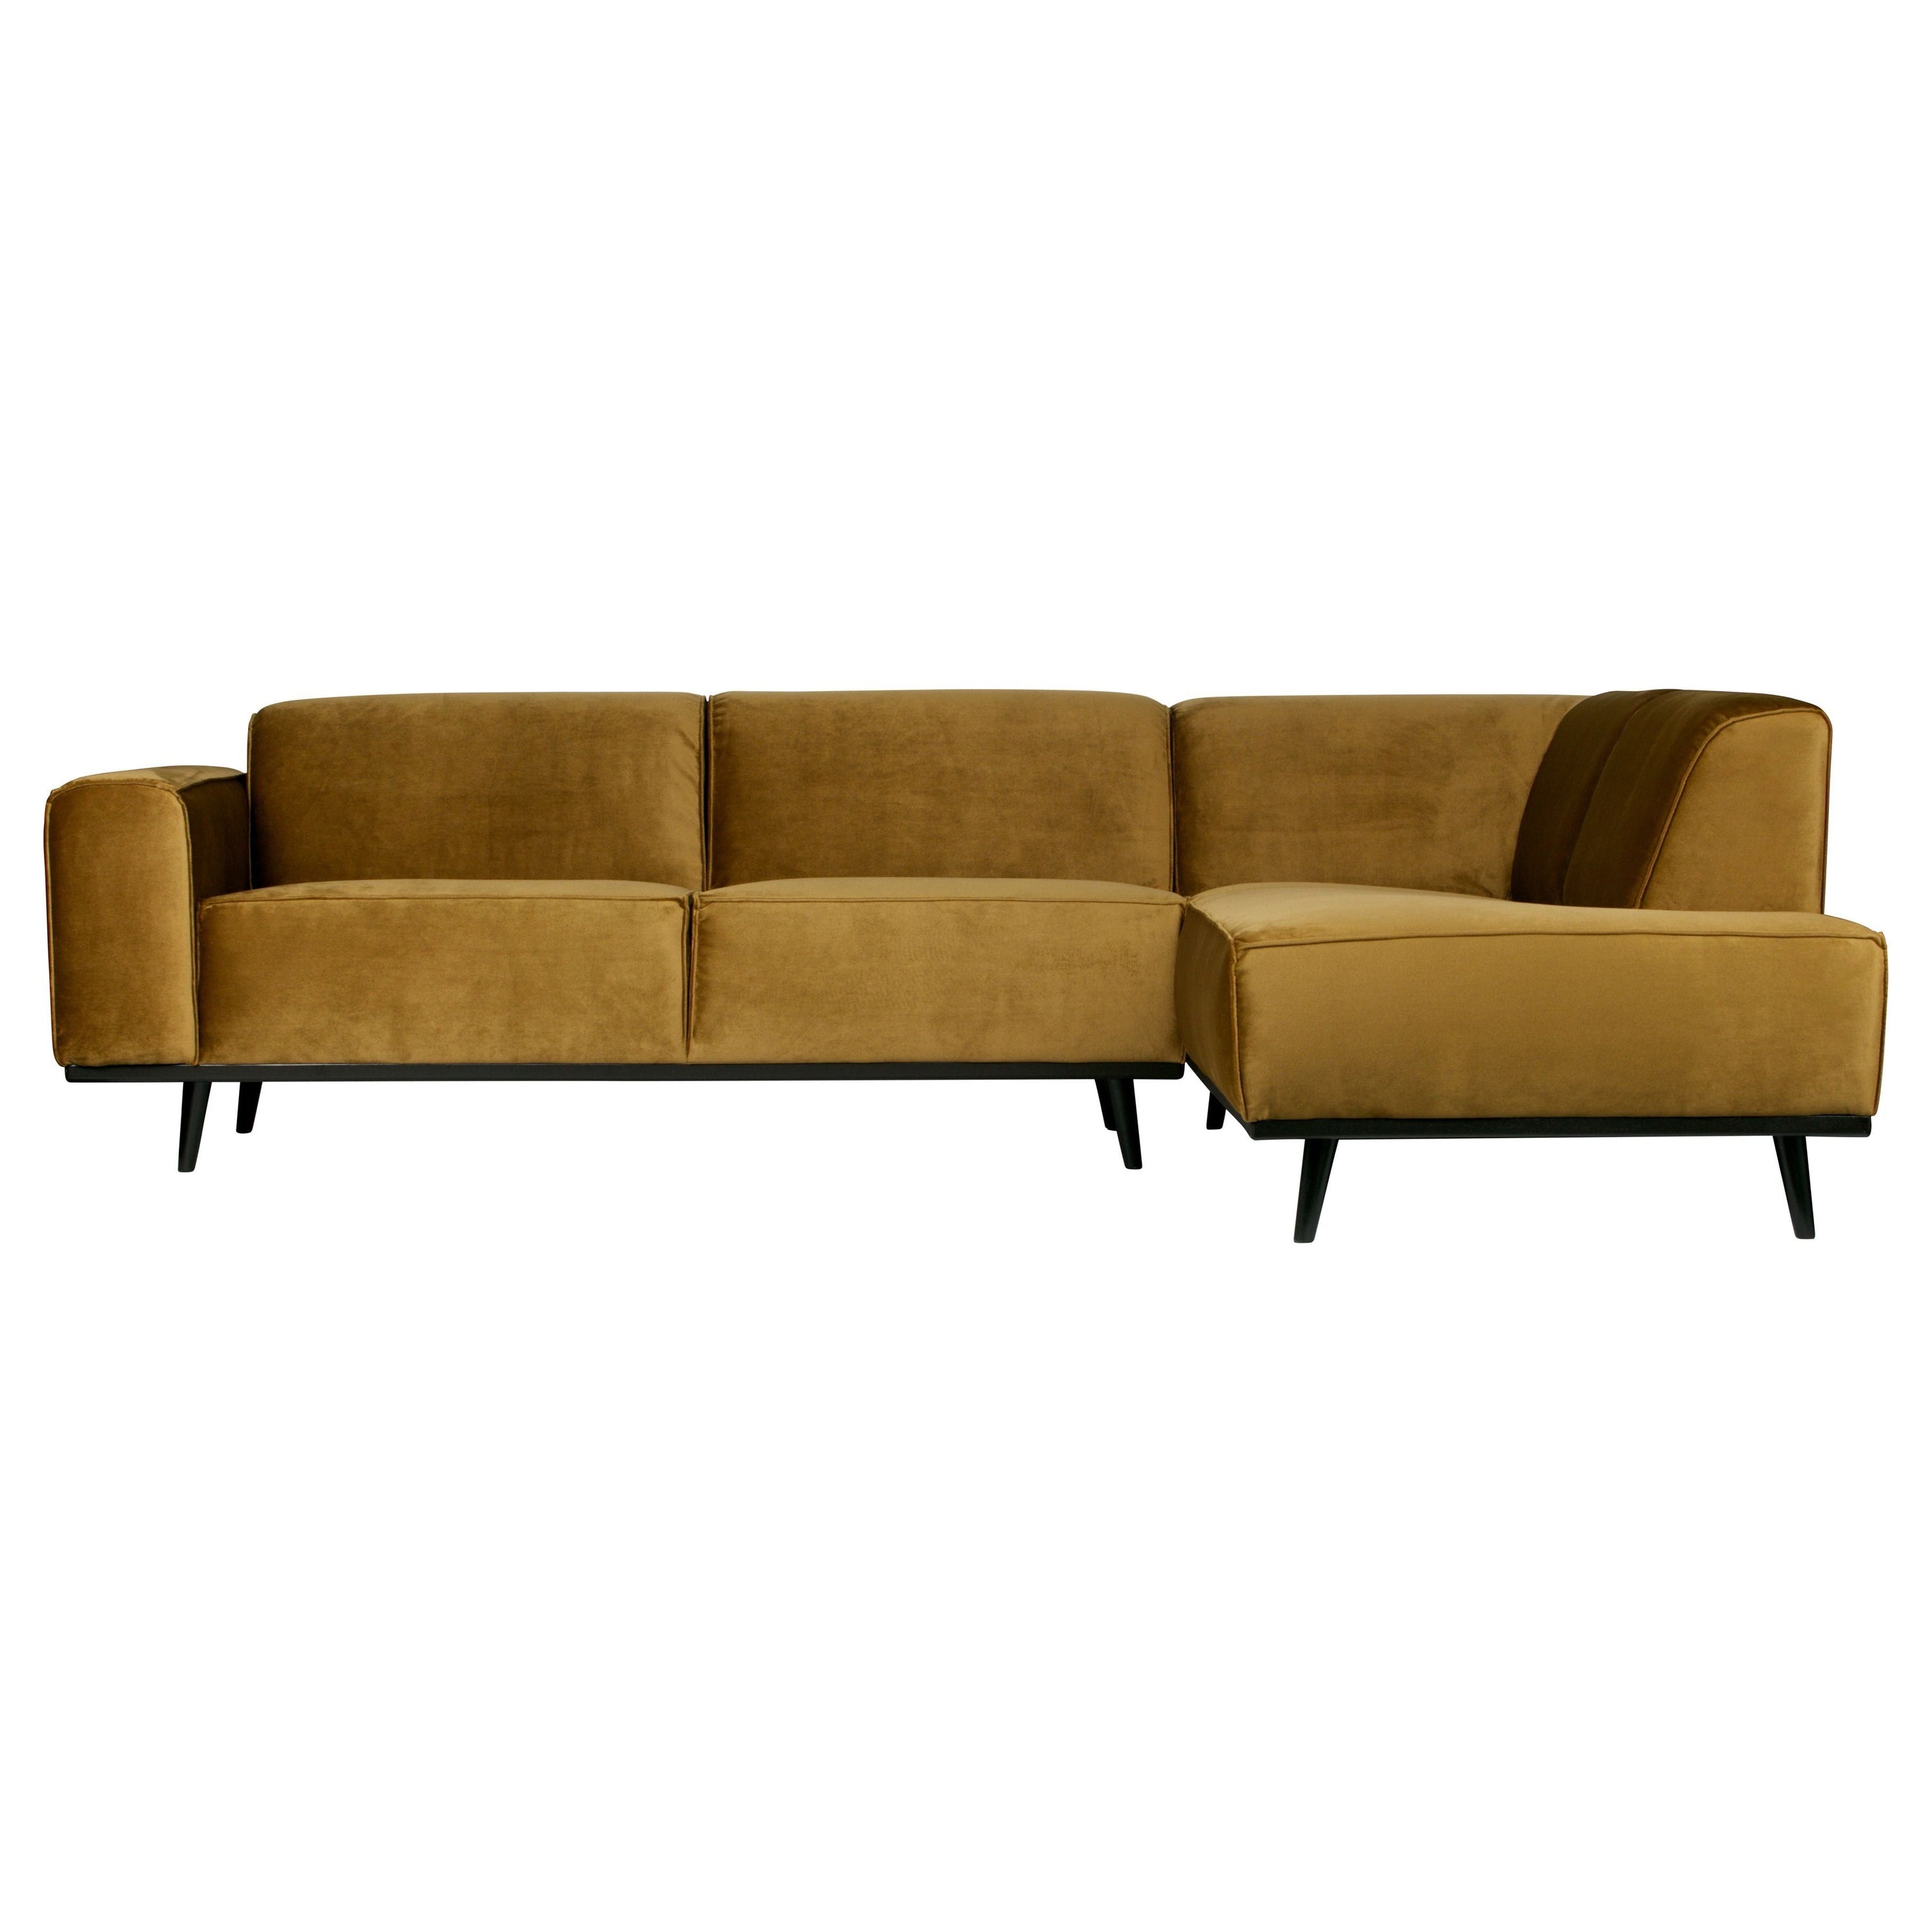 Kampinė sofa "STATEMENT", dešinė pusė, medaus spalva